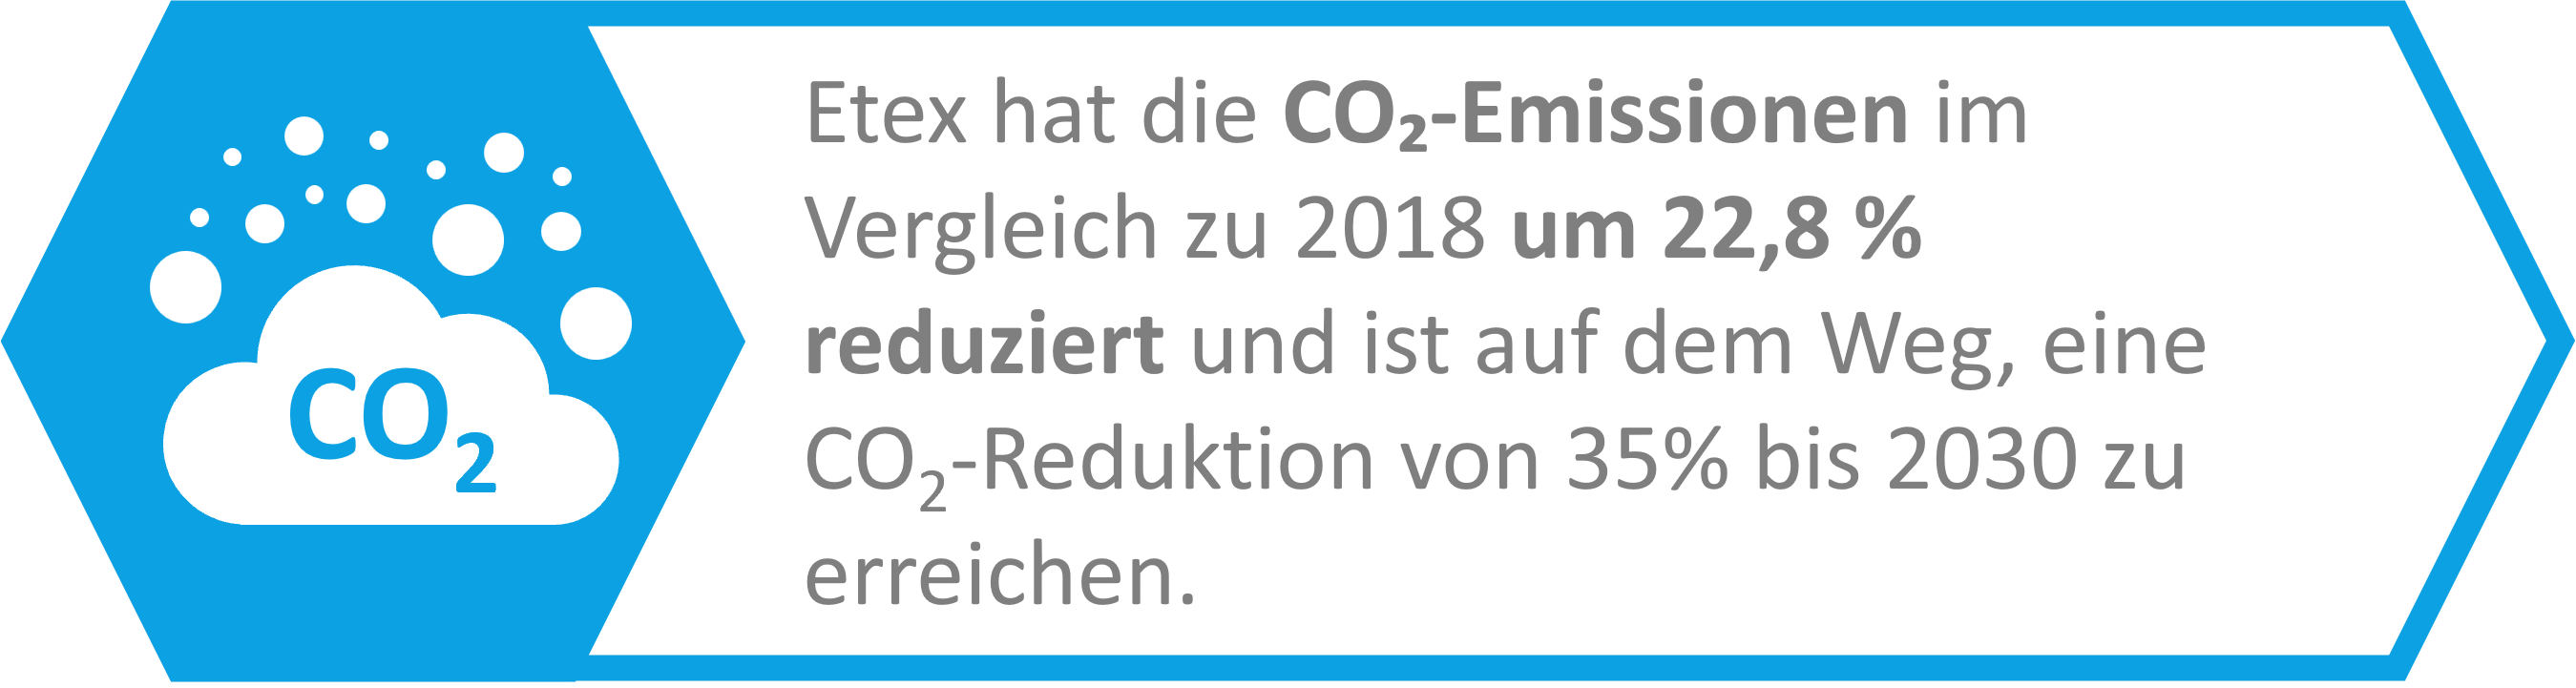 Etex hat die CO₂-Emissionen im Vergleich zu 2018 um 22,8 % reduziert und ist auf dem Weg, eine Emissionsintensitätsreduktion von 35% CO₂ bis 2030 zu erreichen.